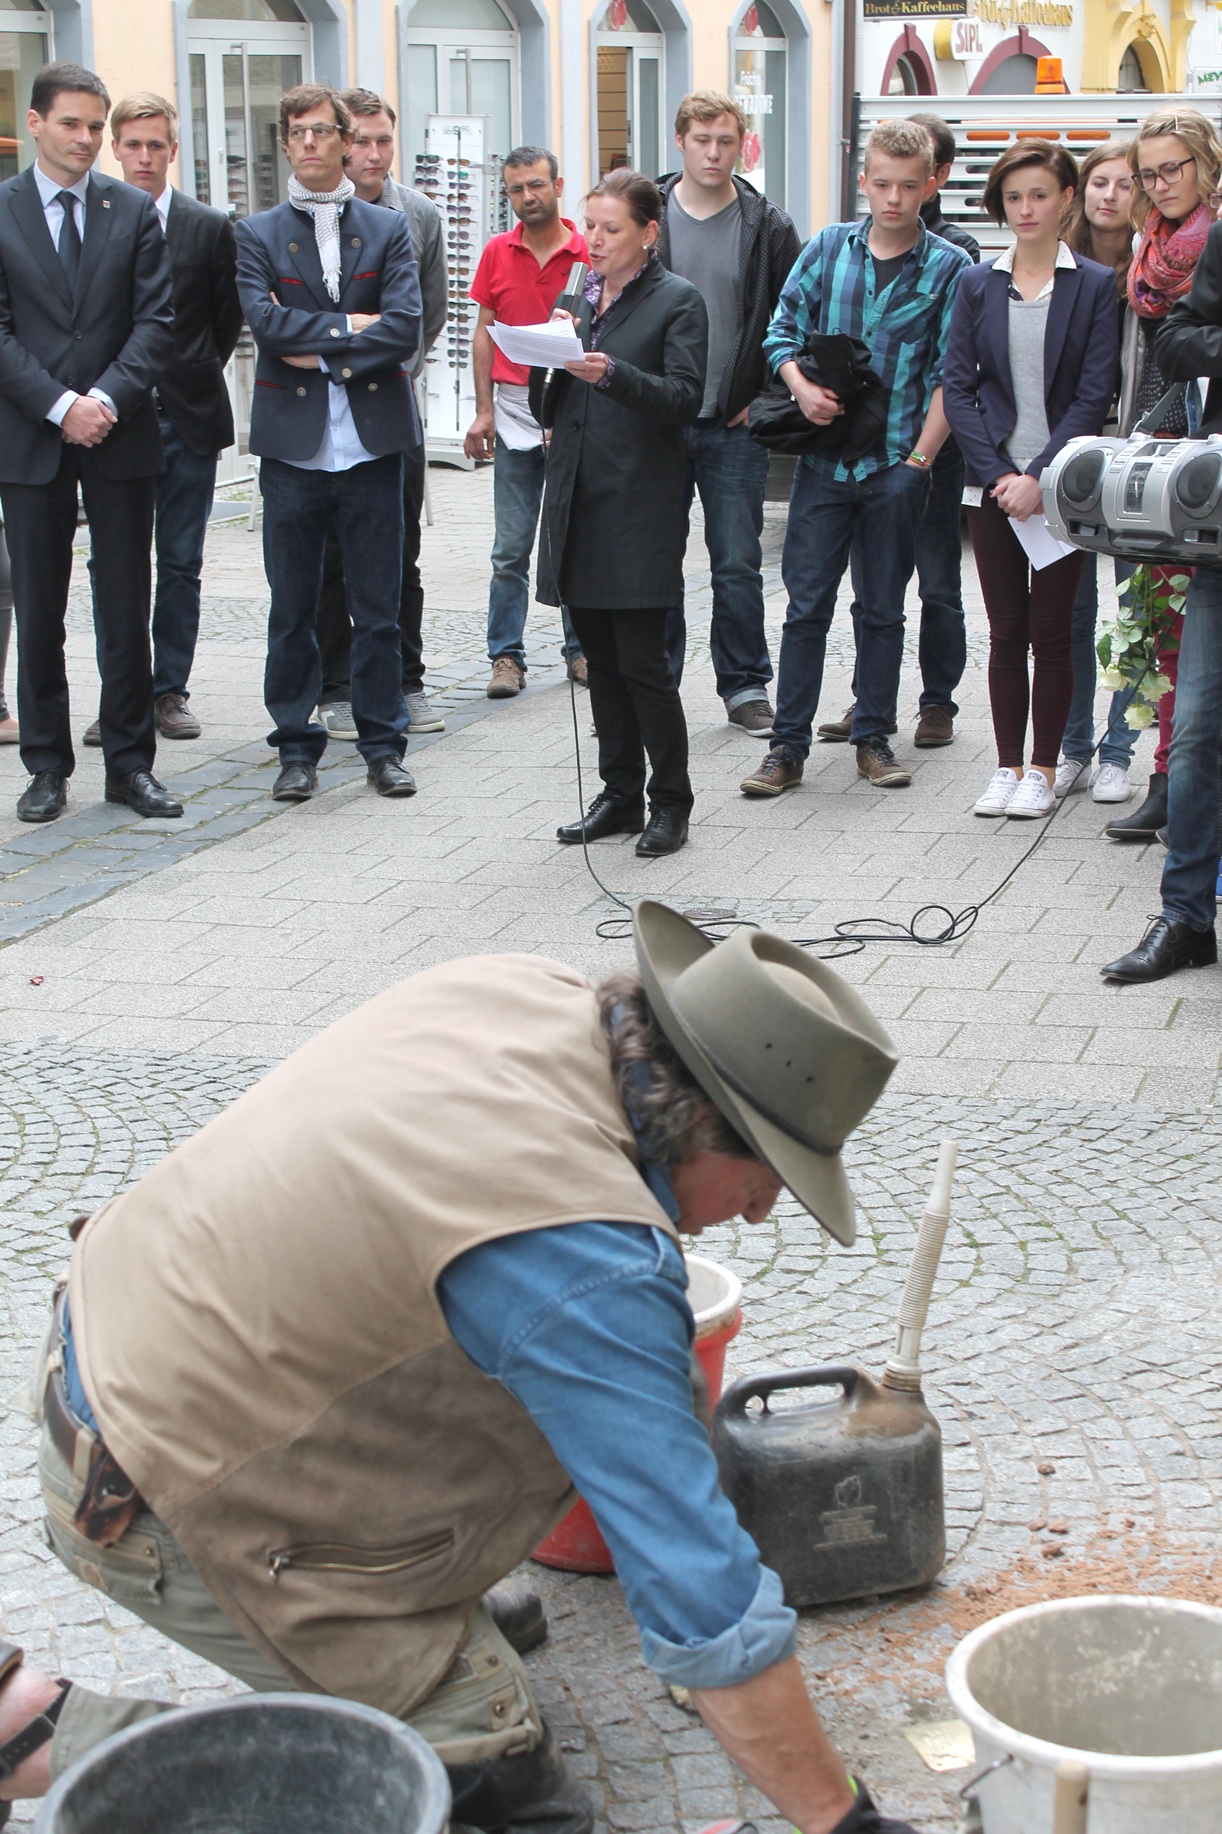 Der Künstler Gunter Demnig verlegt einen Stolperstein in der Marktgasse, Dr. Claudia Grund spricht ein Grußwort. Foto: Heberling